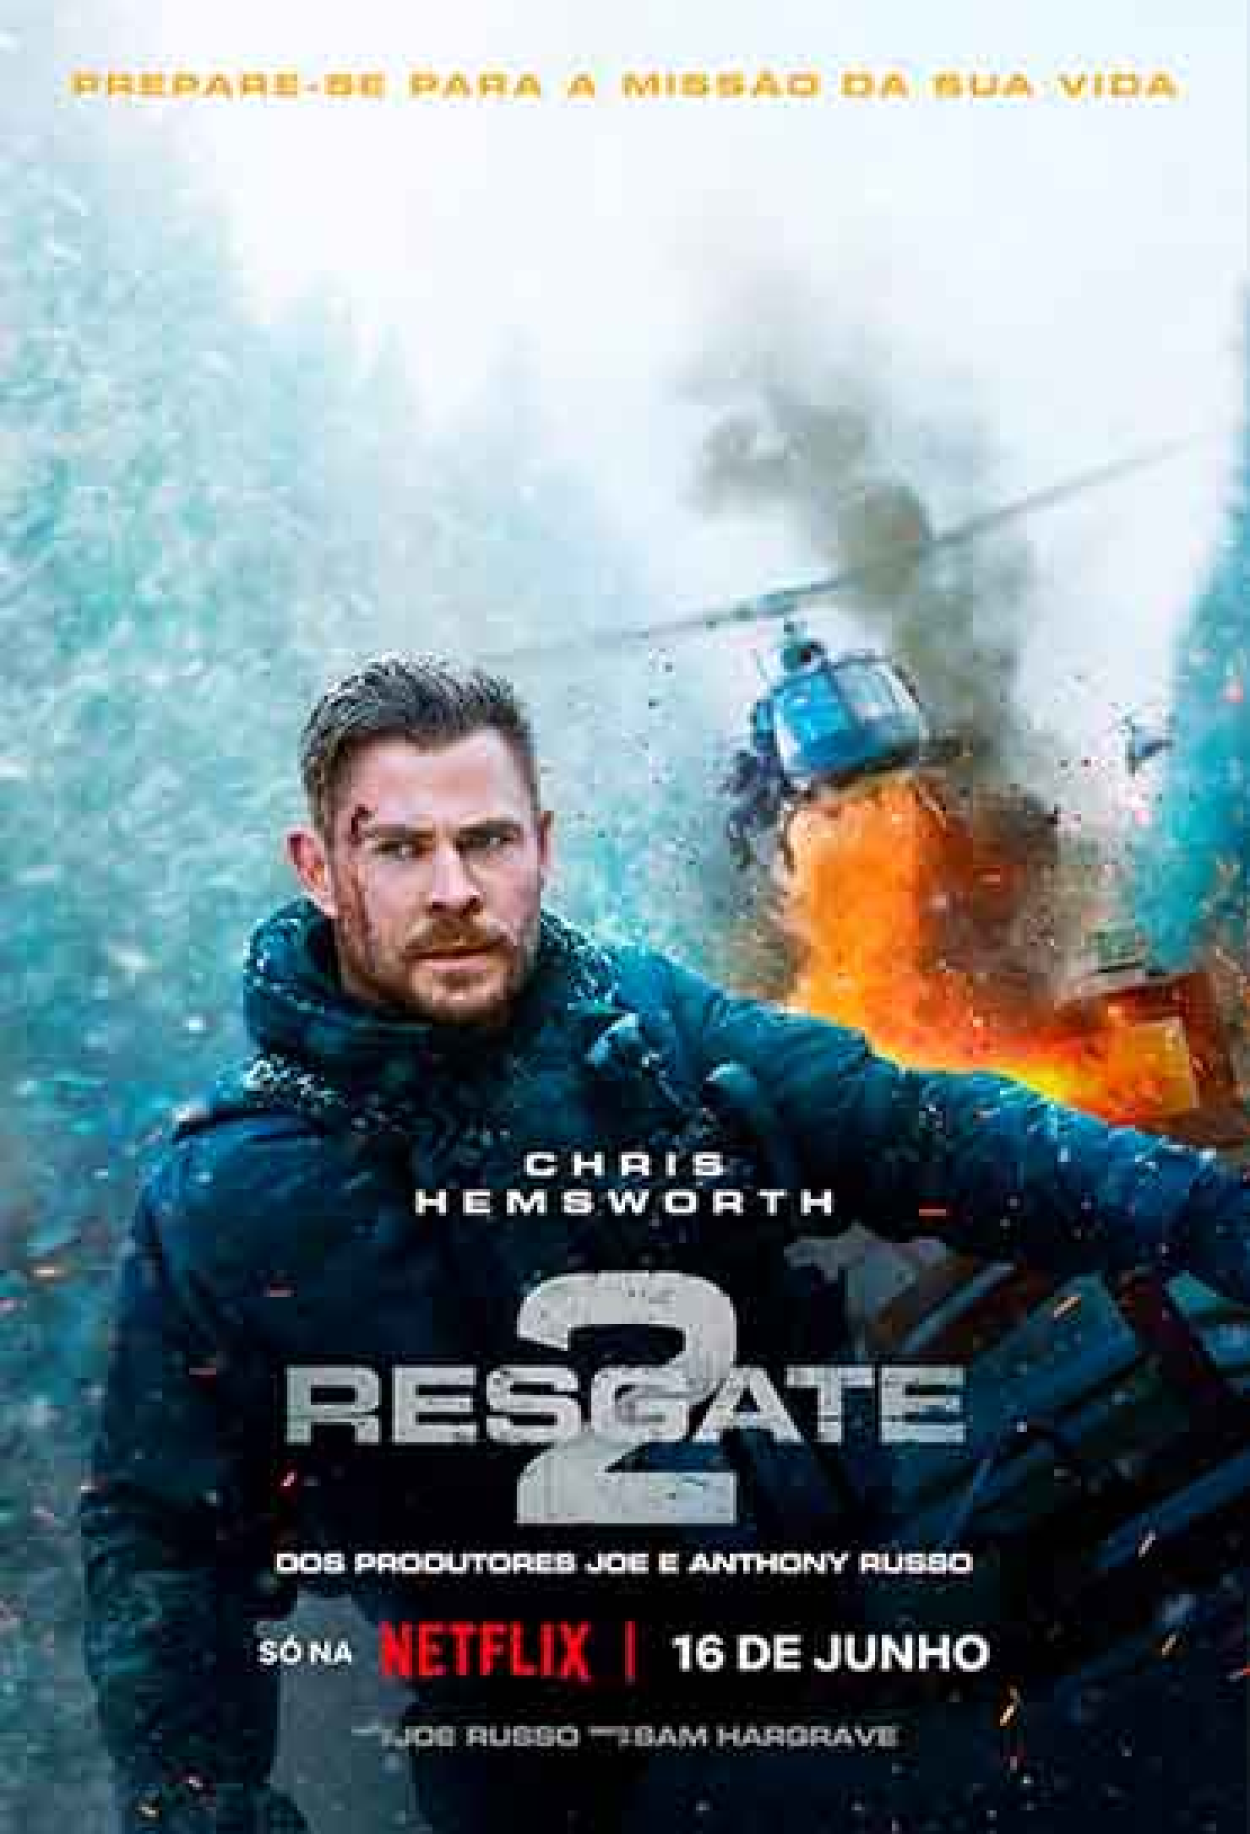 Resgate 2: 5 filmes de ação parecidos para ver na Netflix